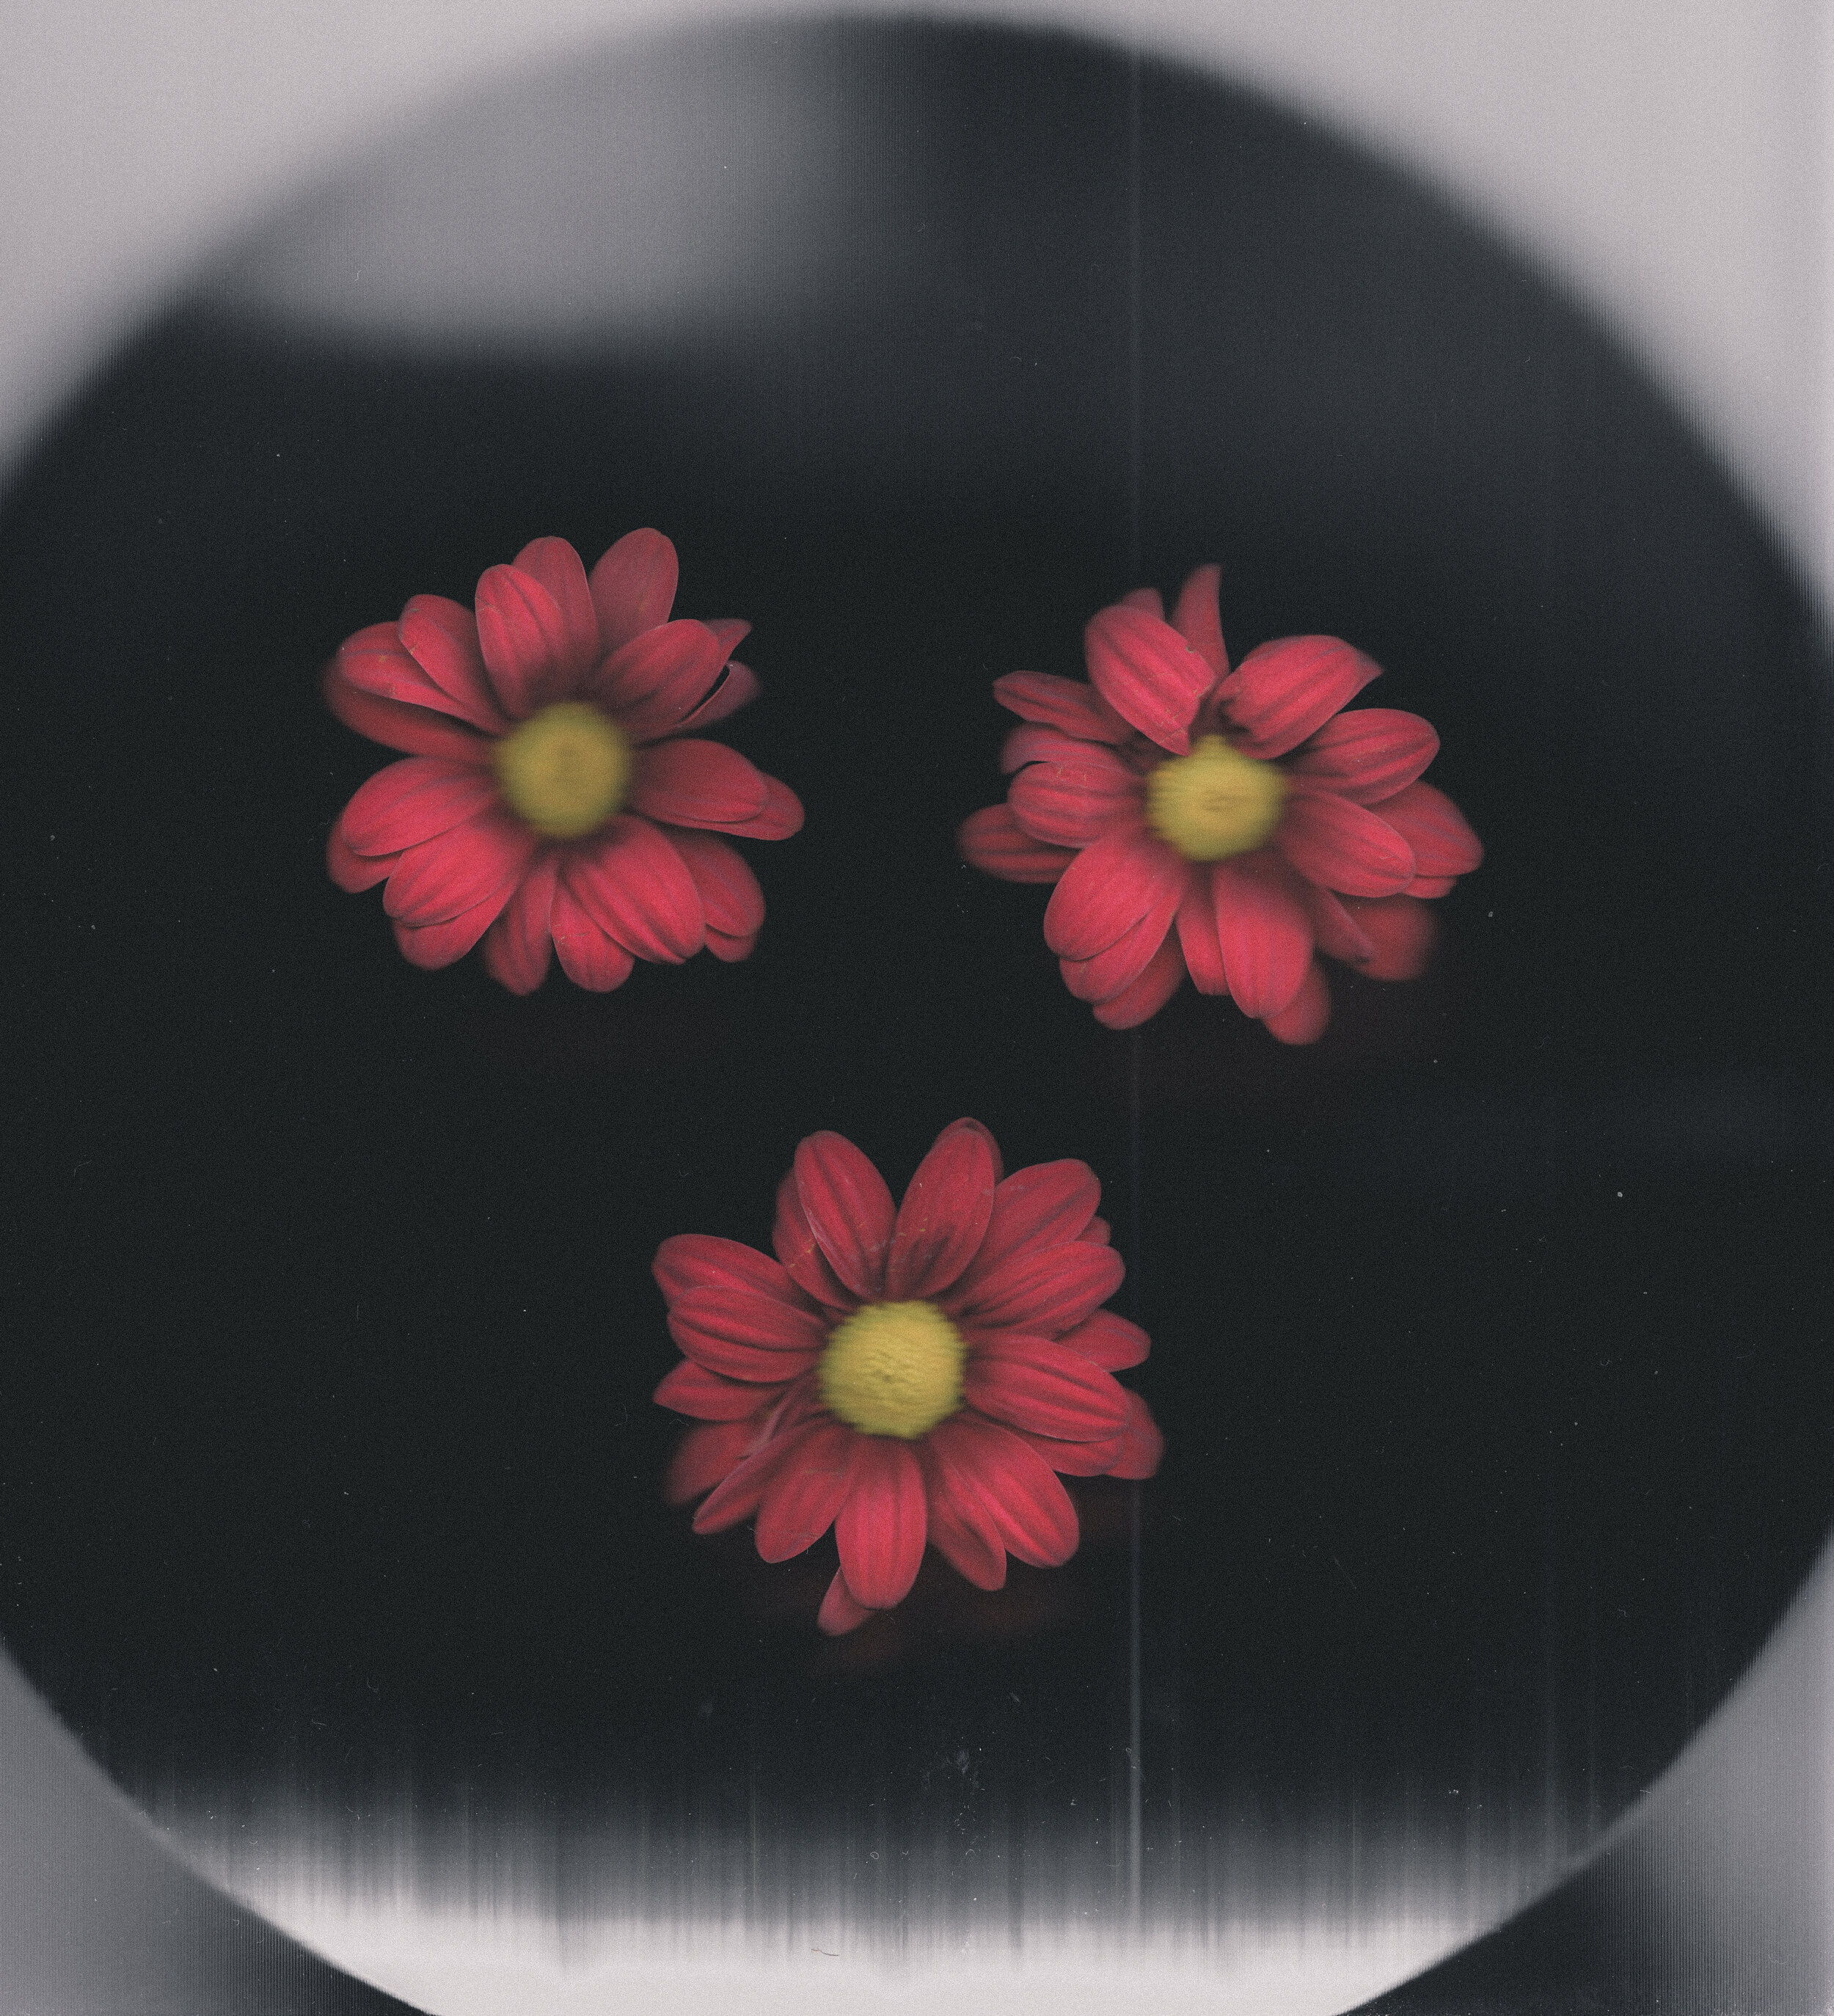 flower scan 3.11.20 (10).jpg